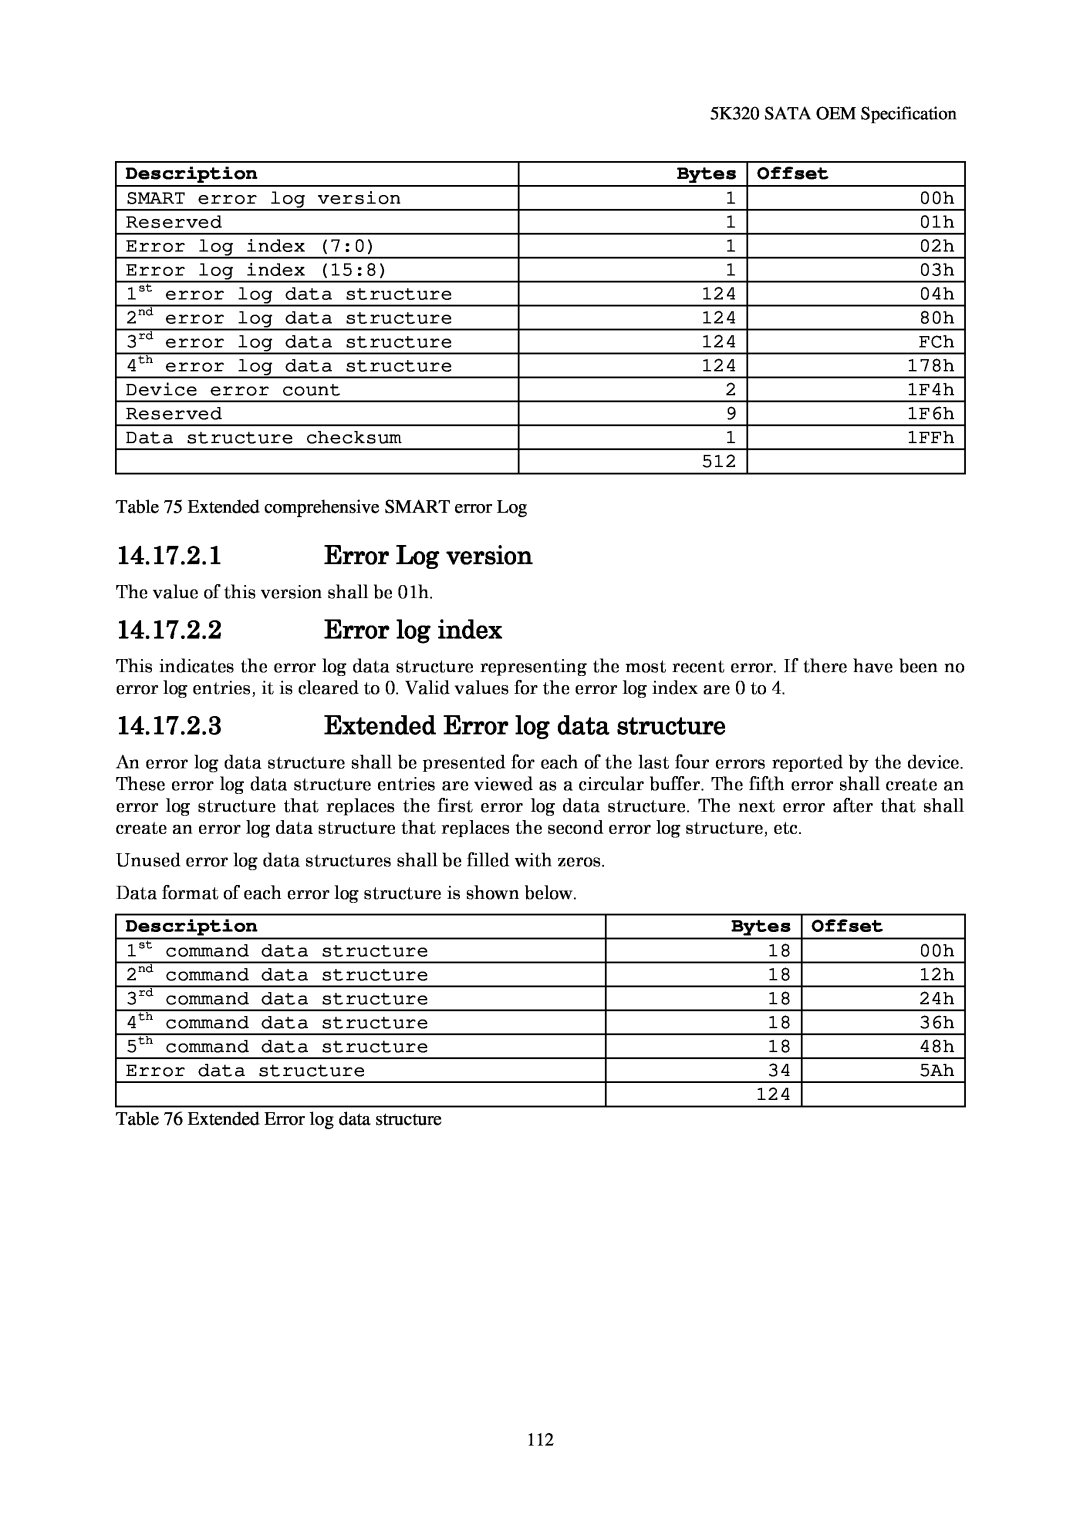 Hitachi HTS543212L9A300 14.17.2.1Error Log version, 14.17.2.2Error log index, 14.17.2.3Extended Error log data structure 